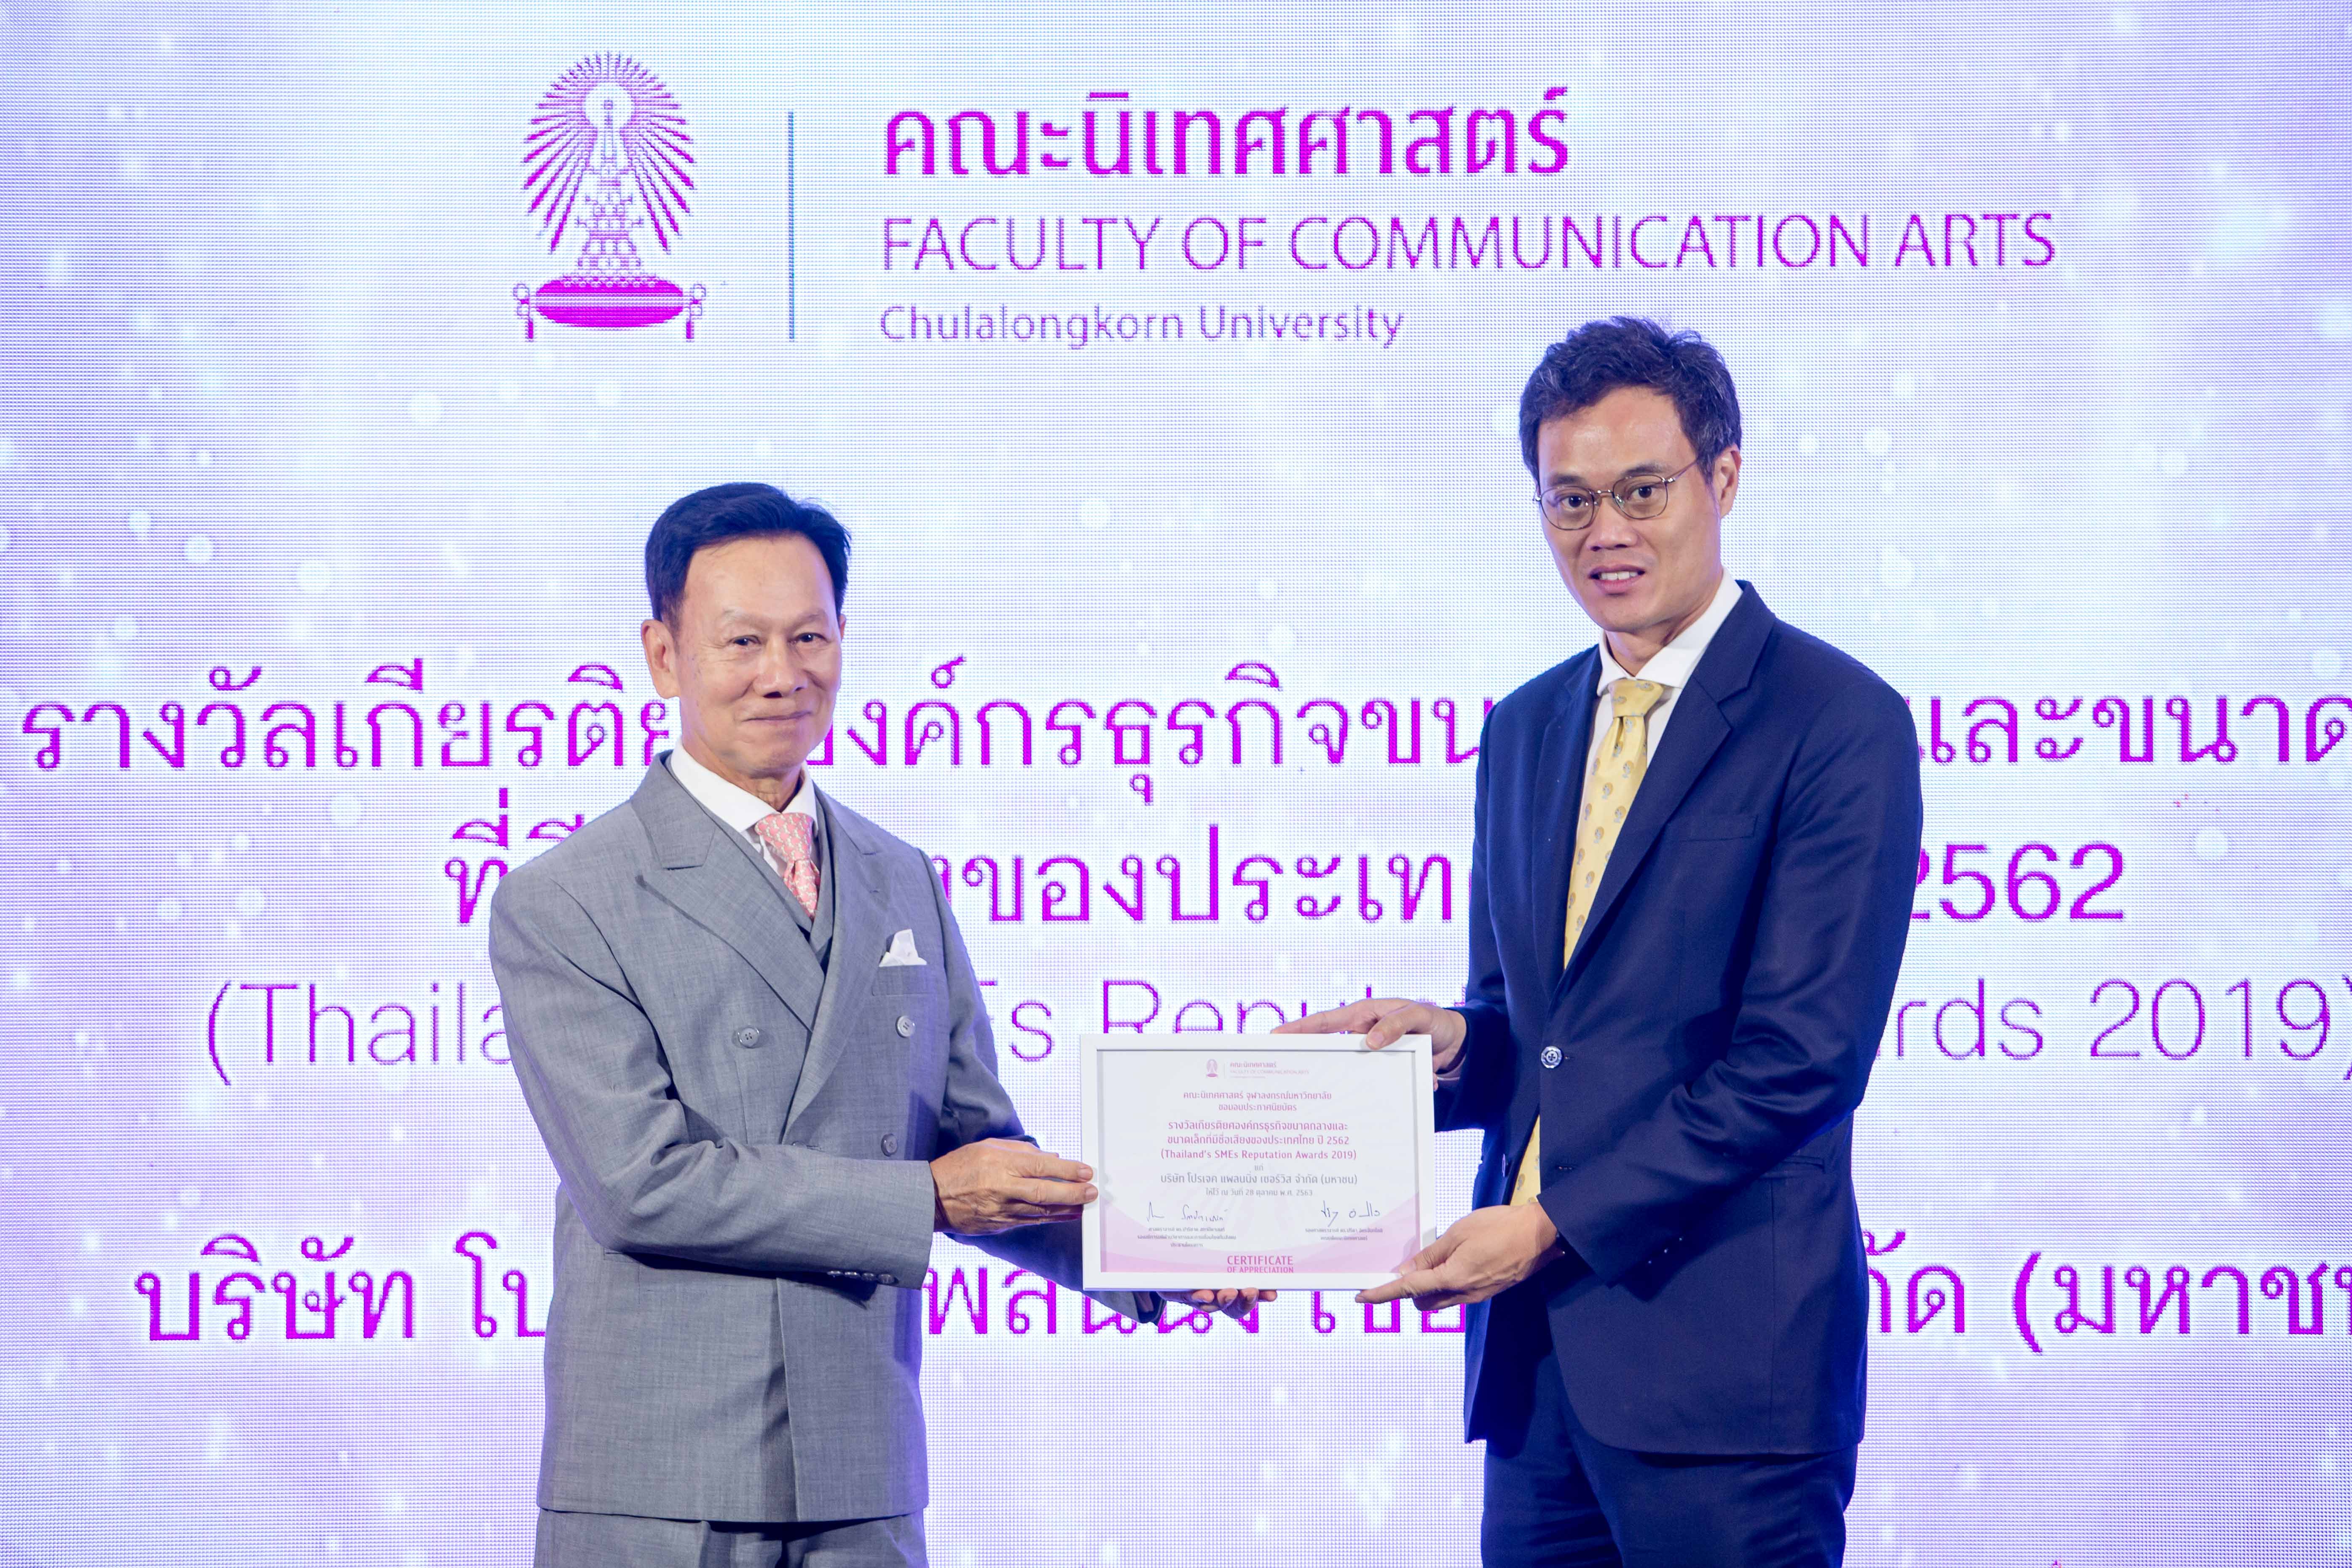 PPS 1 ใน 14 บริษัทที่รับรางวัลองค์กรธุรกิจที่มีชื่อเสียงของประเทศไทยประจำปี 2562 จากคณะนิเทศศาสตร์ จุฬาลงกรณ์มหาวิทยาลัย